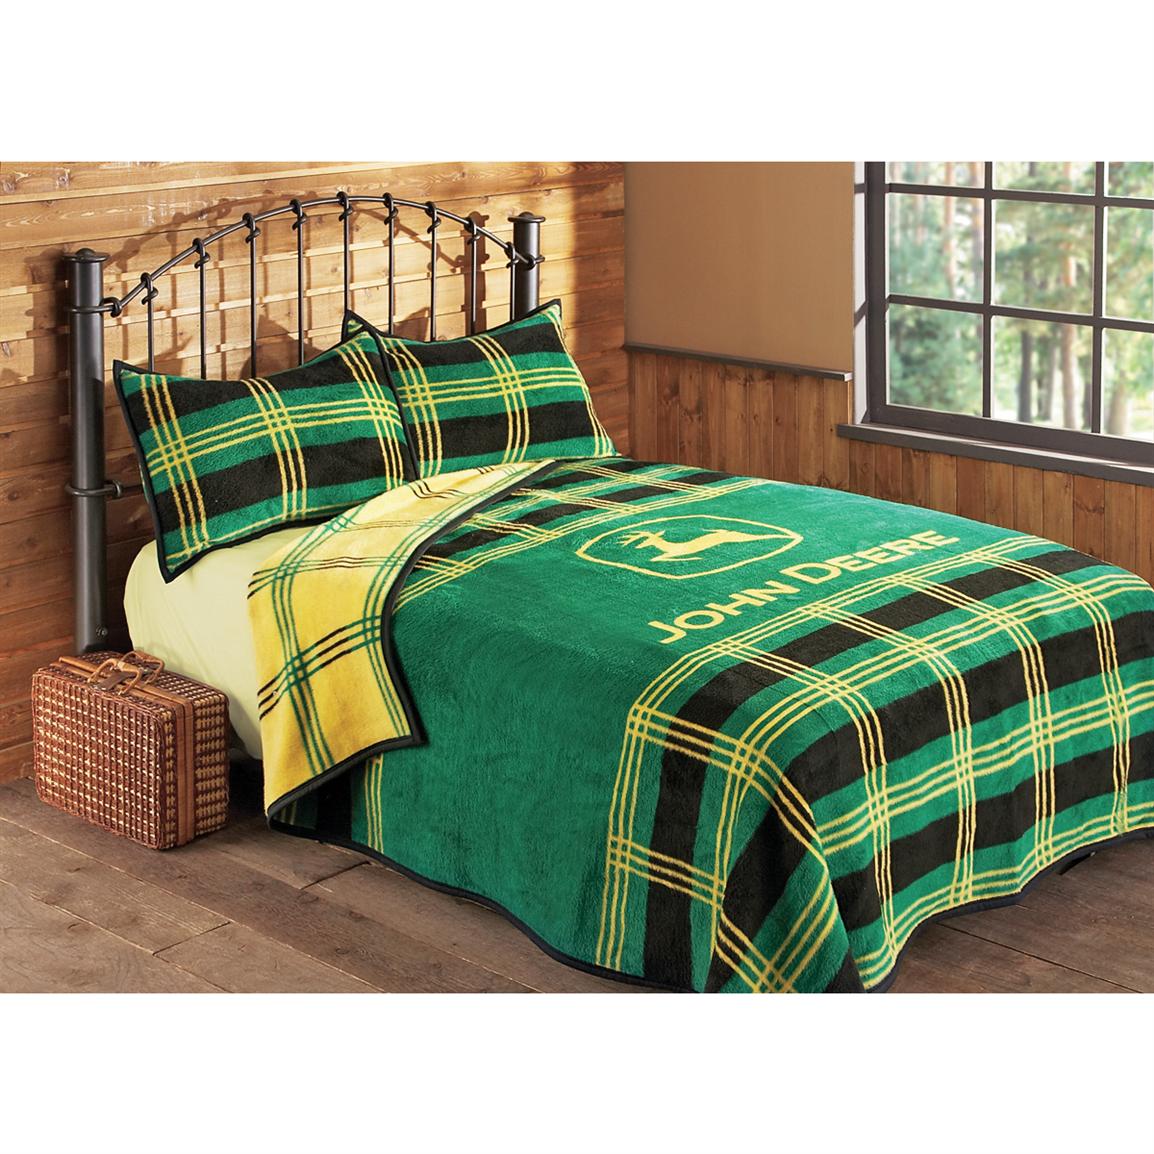 John Deere Plaid Bed Blanket 106932 Quilts Sets At